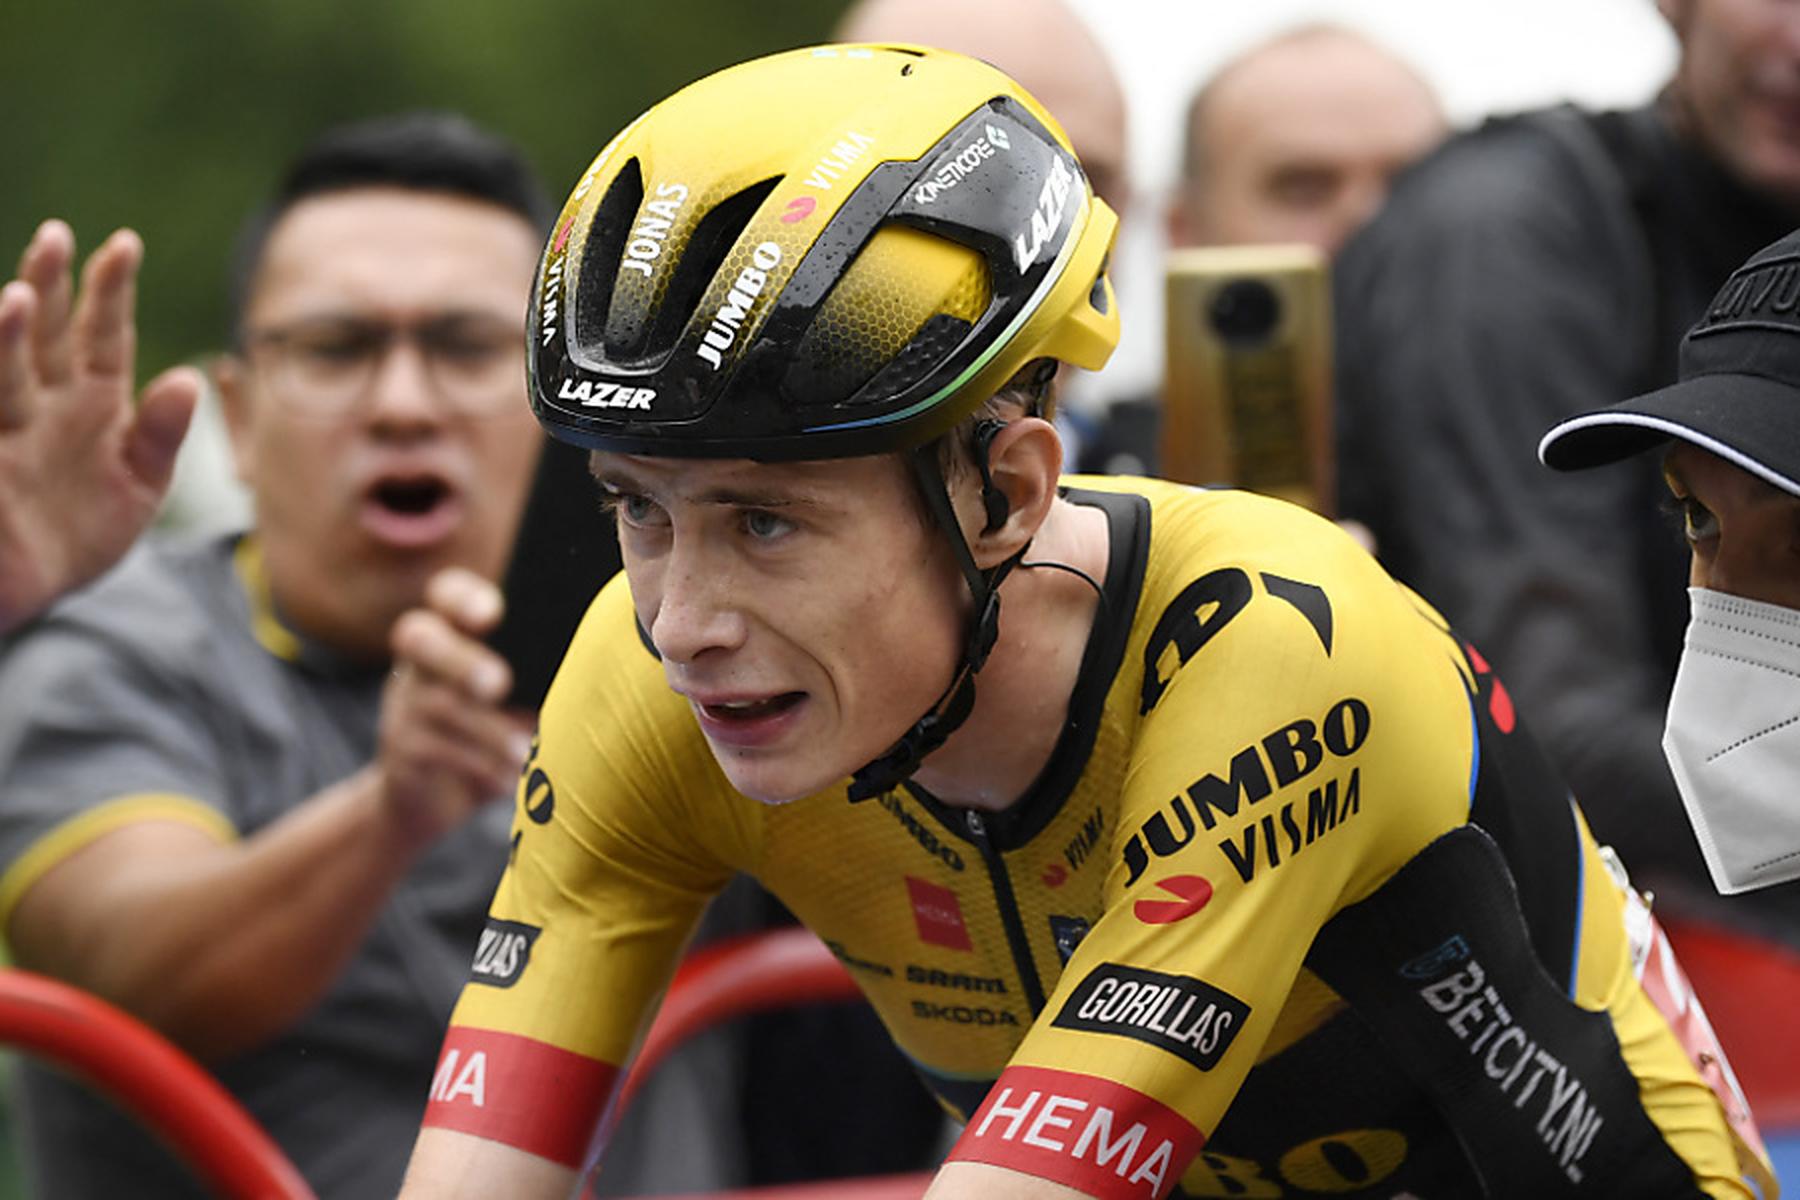 Amsterdam: Titelverteidiger Vingegaard bei Tour de France dabei